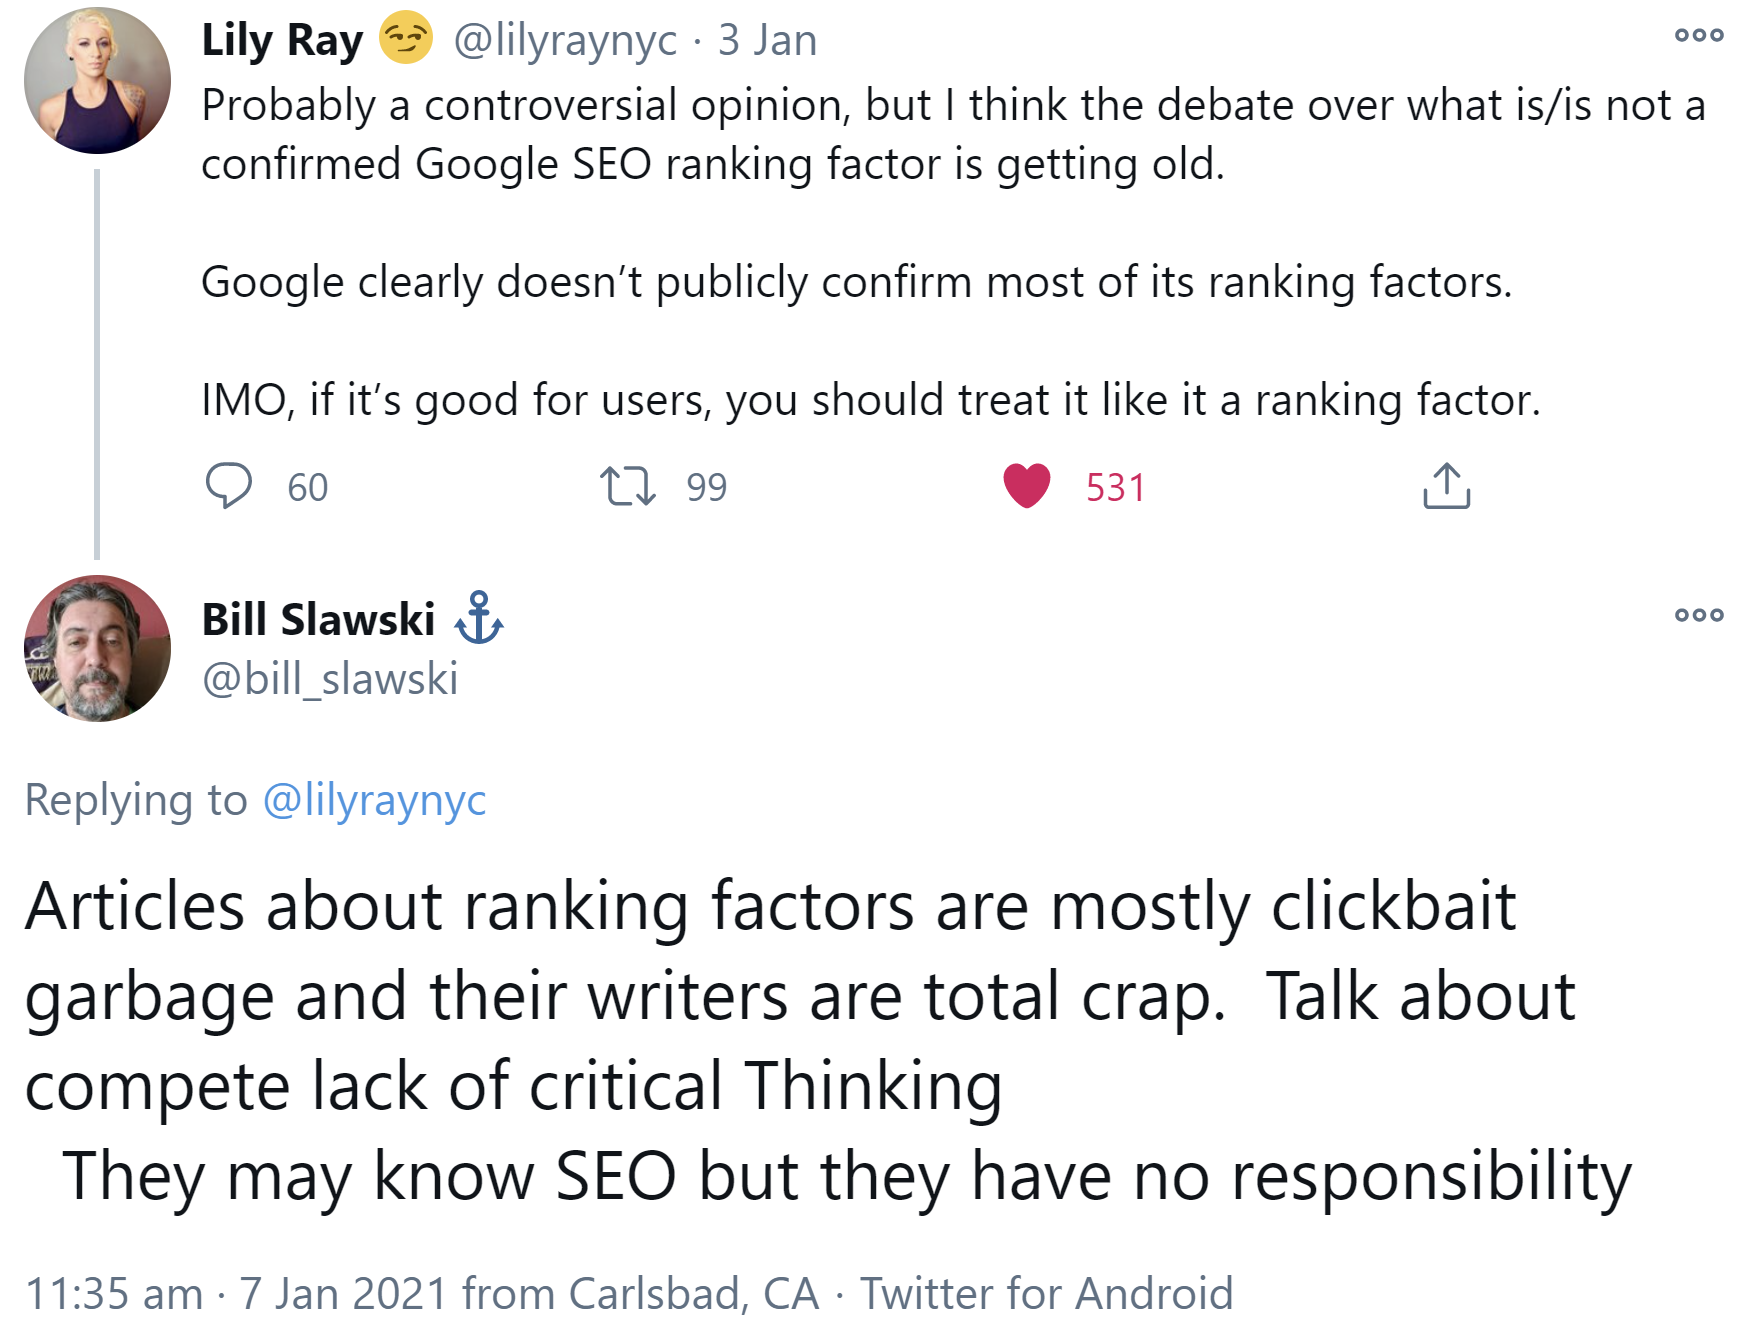 Google: Schreiben über Rankingfaktoren nur Click Baiting?